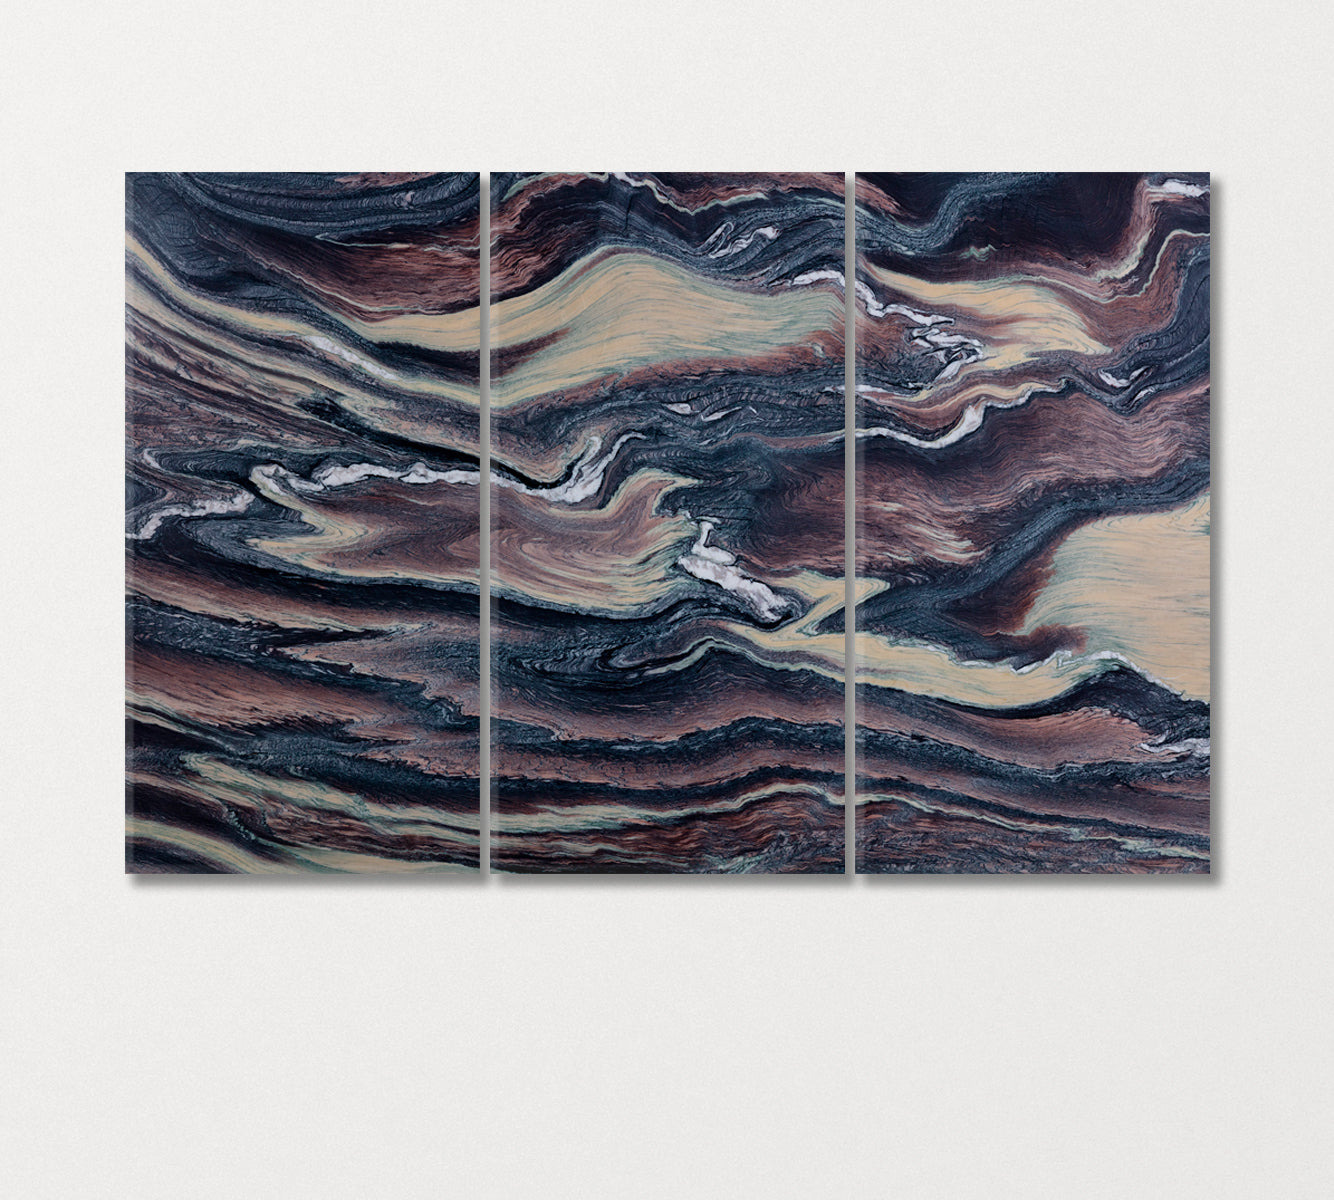 Natural Quartzite Canvas Print-Canvas Print-CetArt-3 Panels-36x24 inches-CetArt